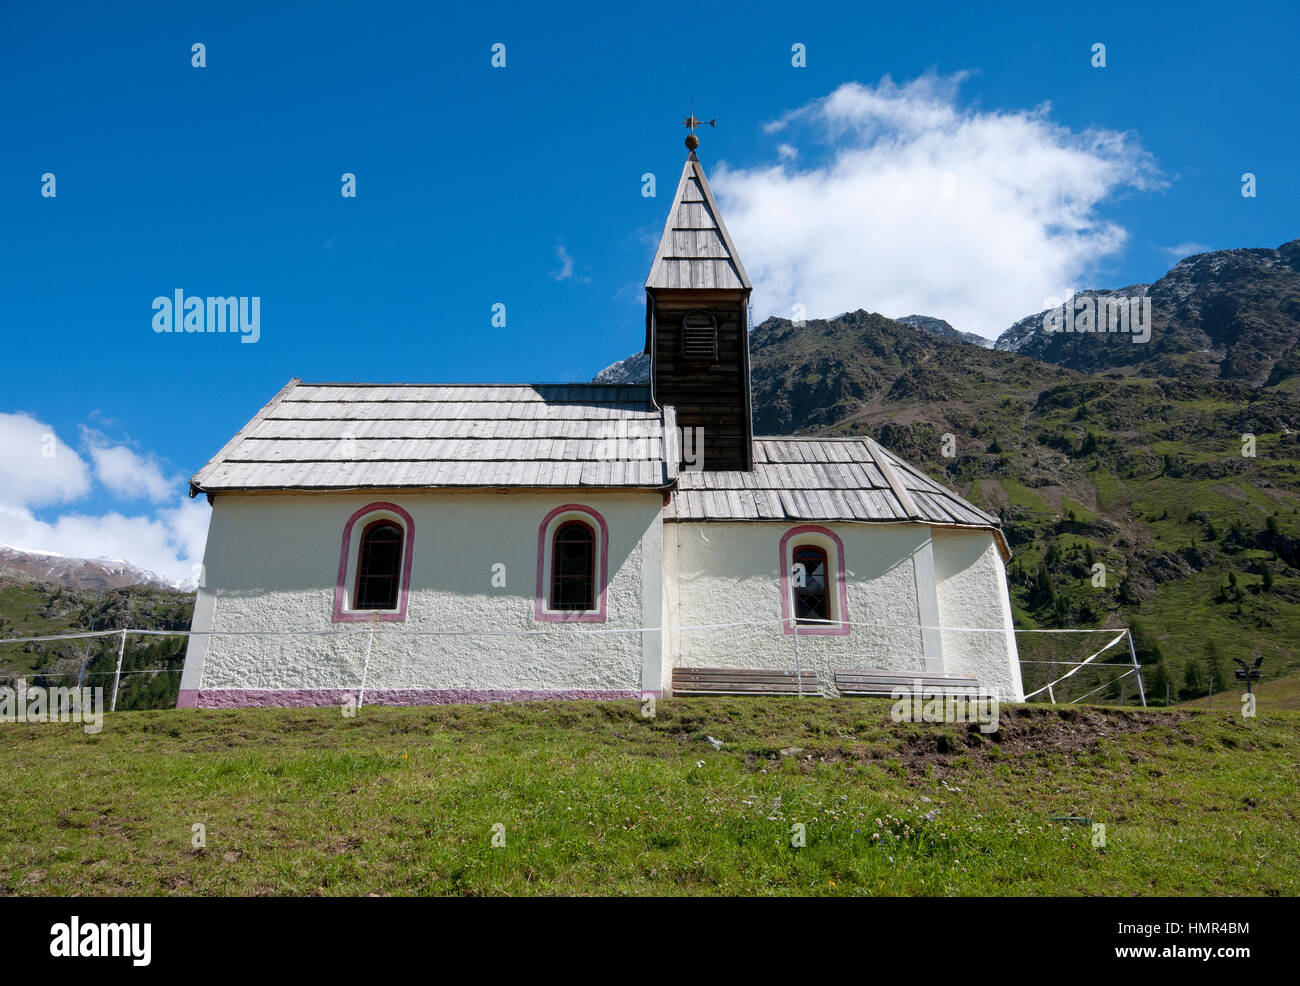 Church of Maso Corto (Kurzras), Val Senales (Schnalstal), Trentino Alto Adige, Italy Stock Photo